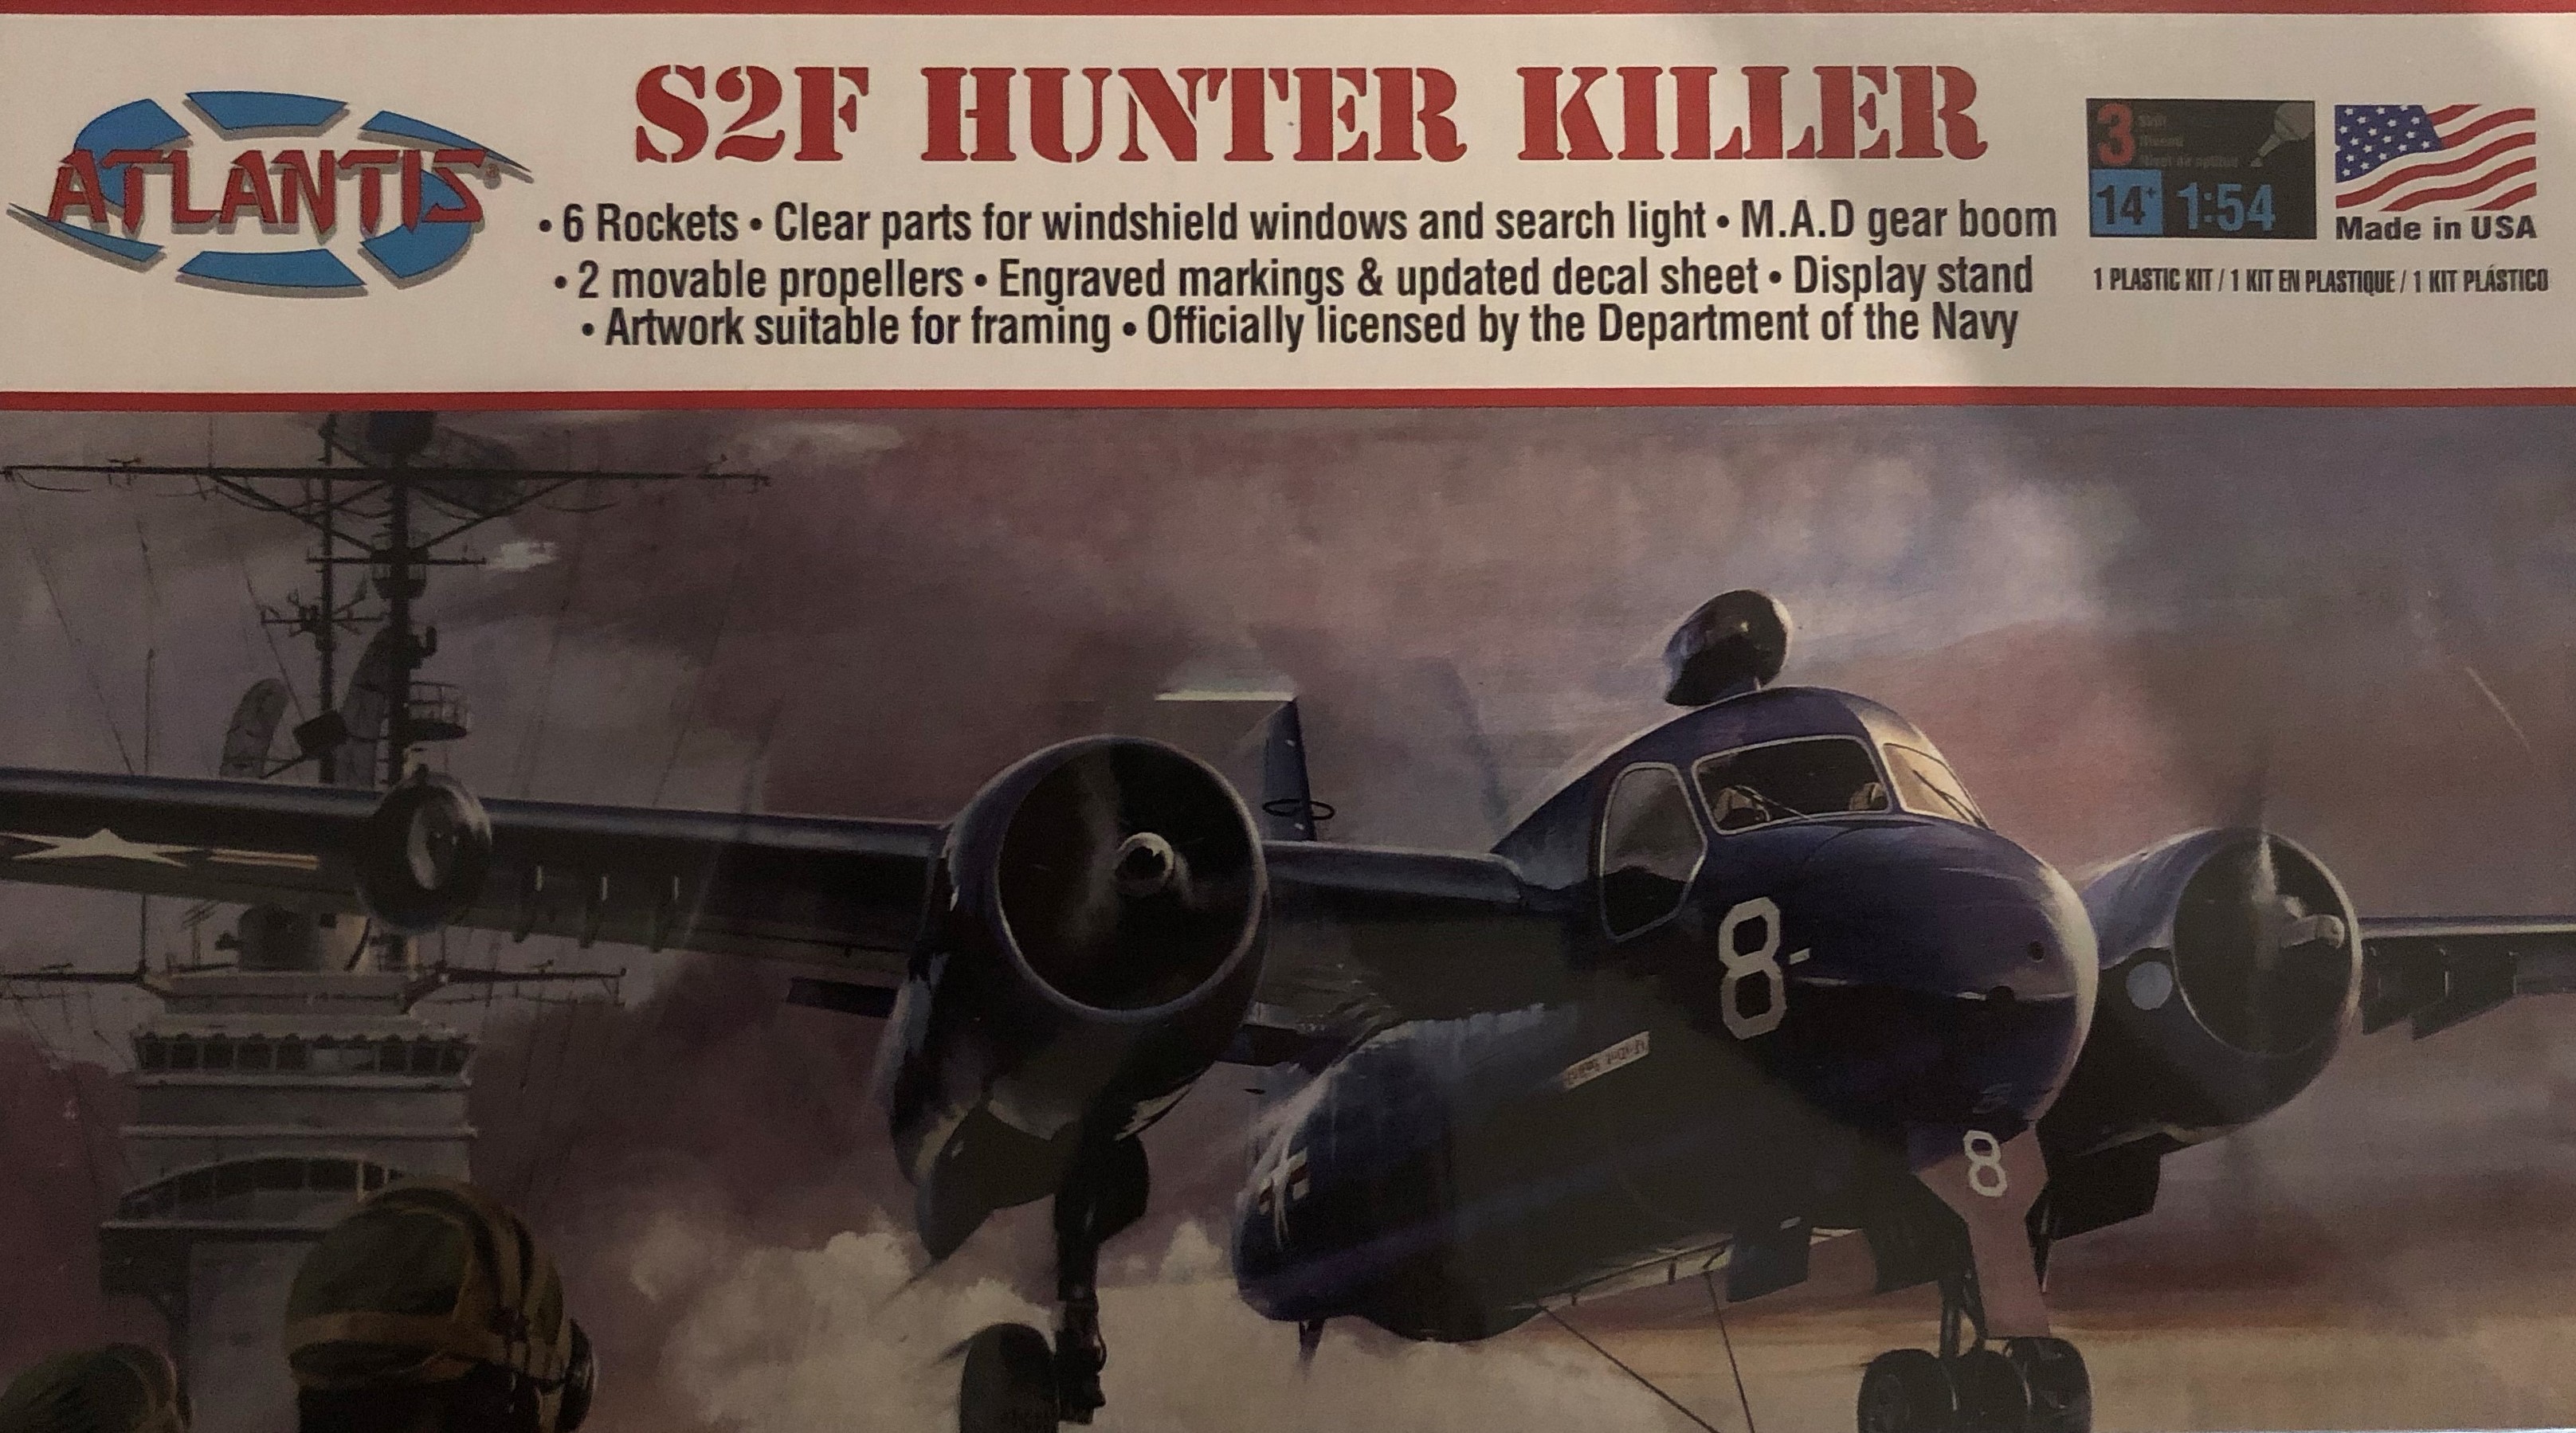 Atlantis A145 S2F Hunter Killer 1:54